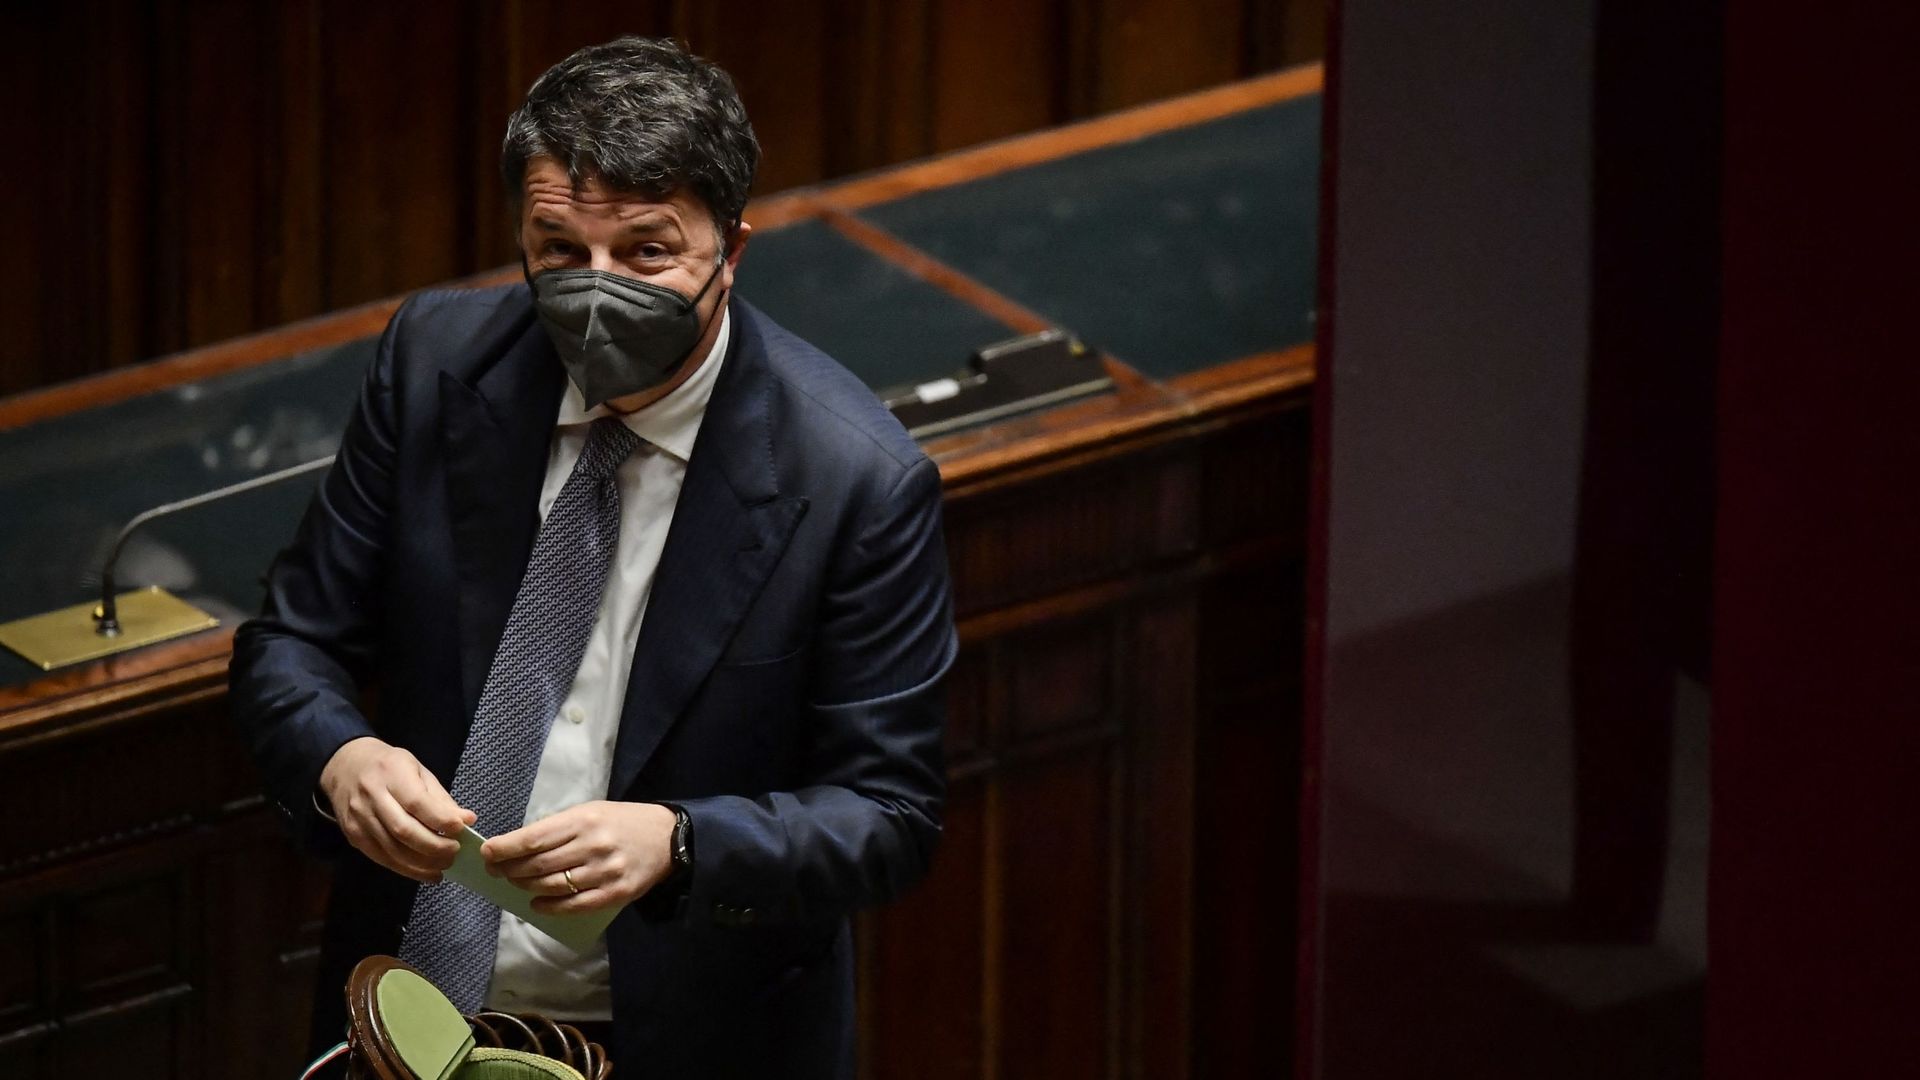 Le législateur italien Matteo Renzi se prépare à voter lors du sixième tour de scrutin pour l'élection du nouveau président de l'Italie, le 28 janvier 2022, au Parlement de Rome